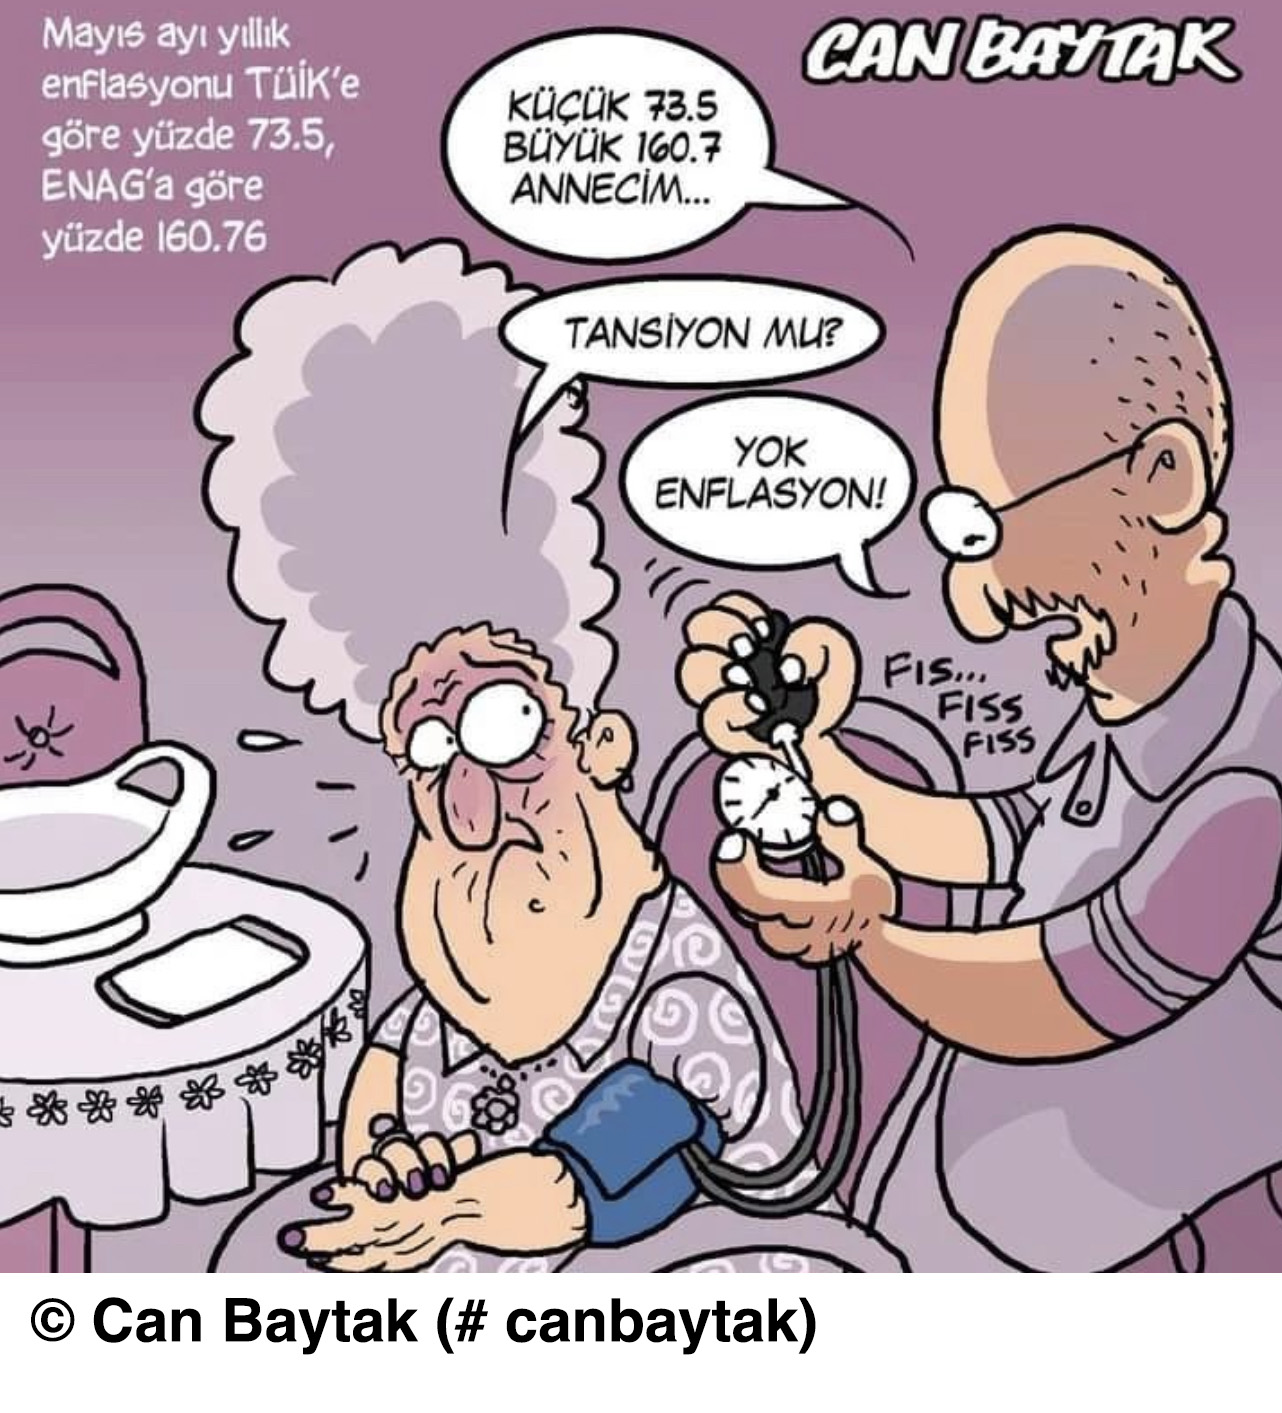 Baytak'ın karikatürü